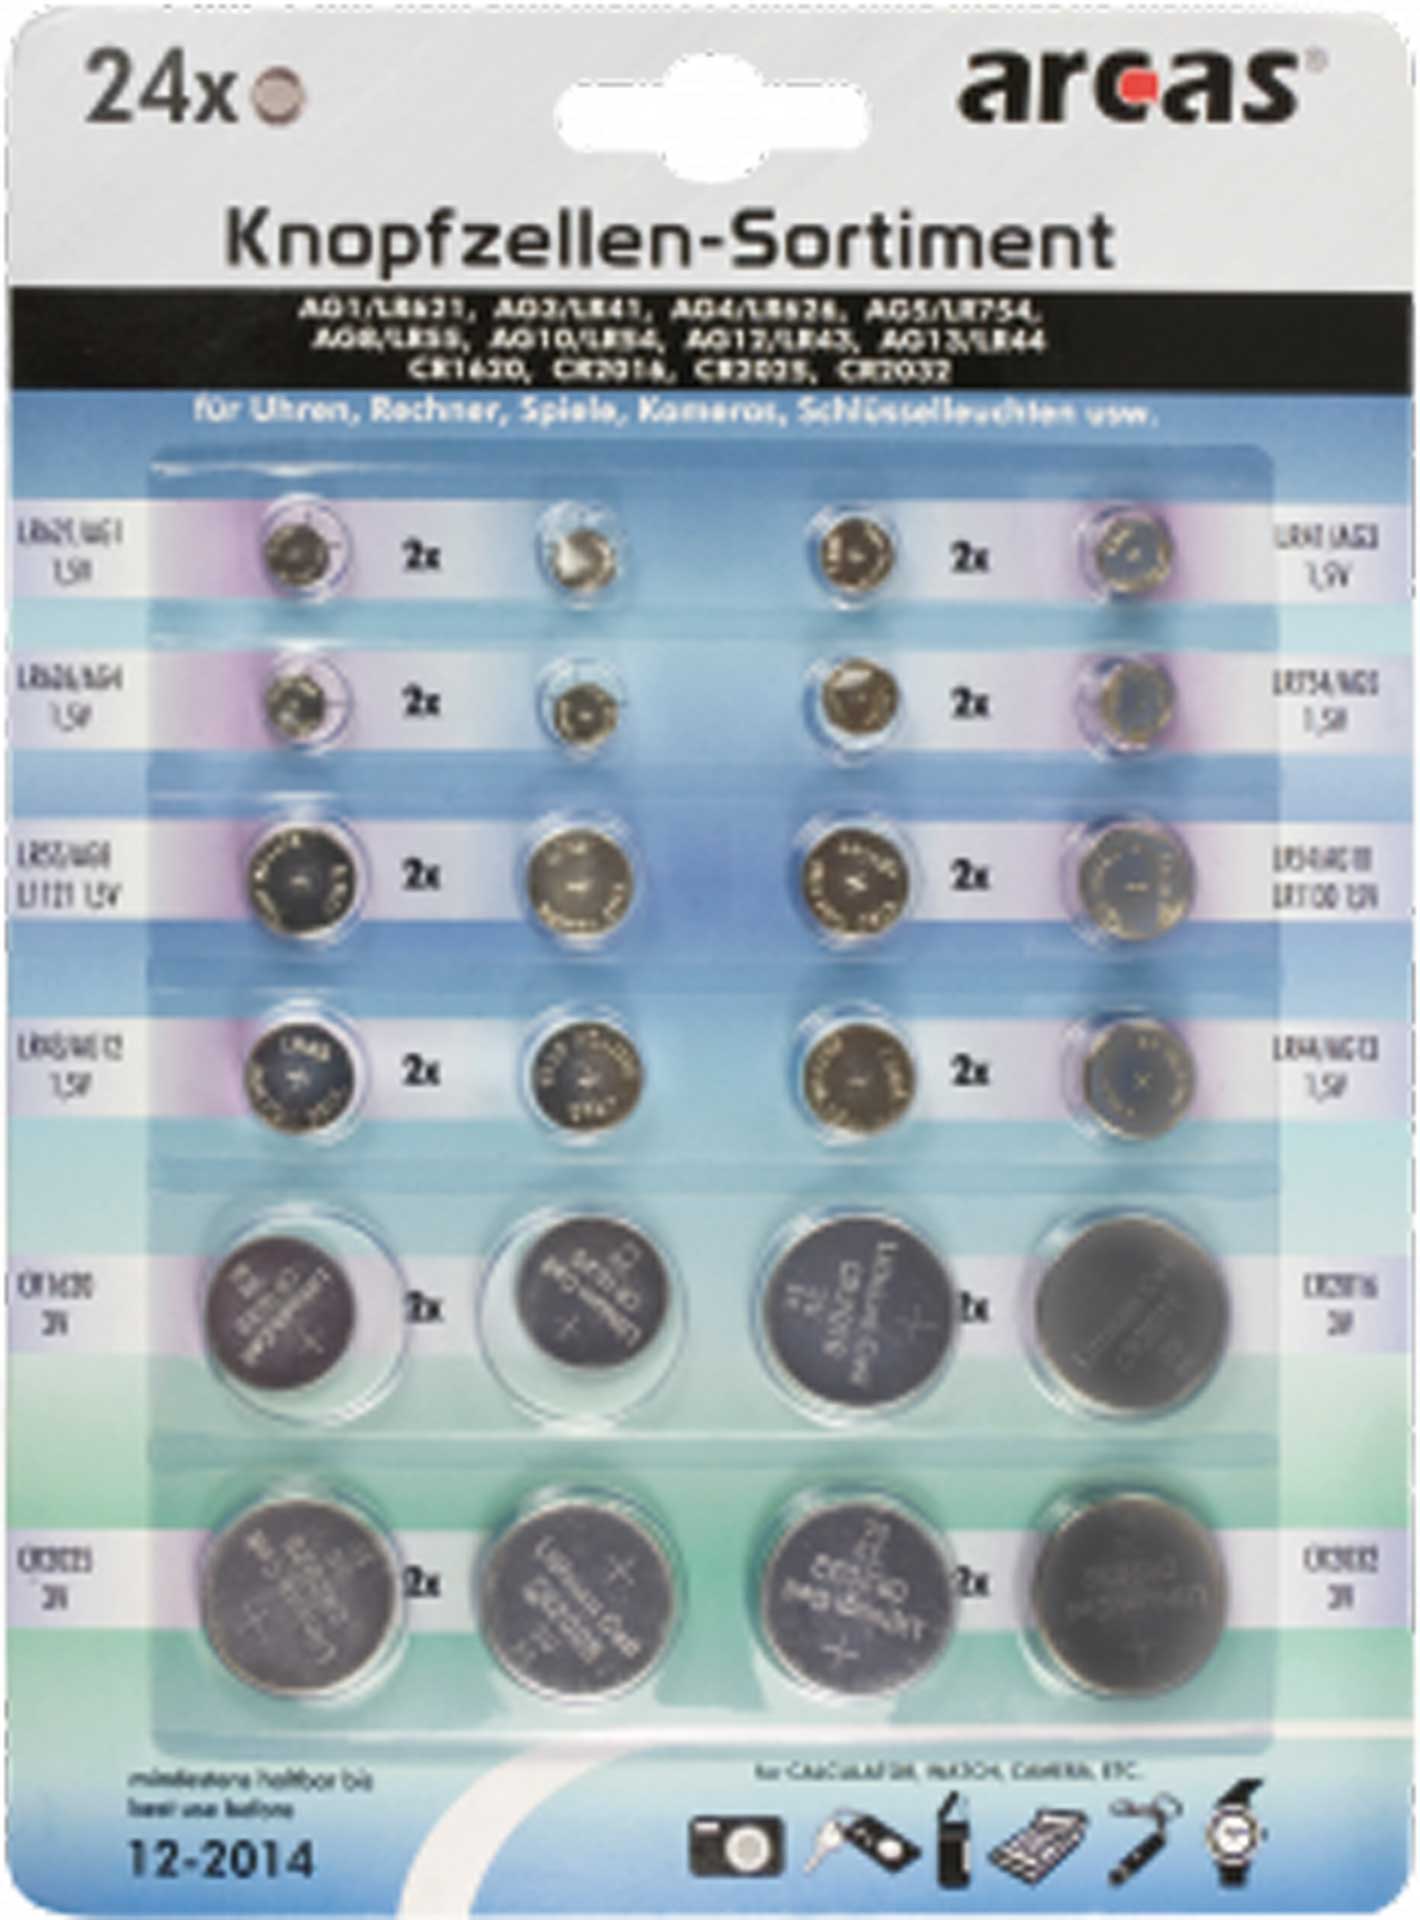 MODELLBAU LINDINGER Knopfzellen-Sortiment Alkaline und Lithium 24-teilig